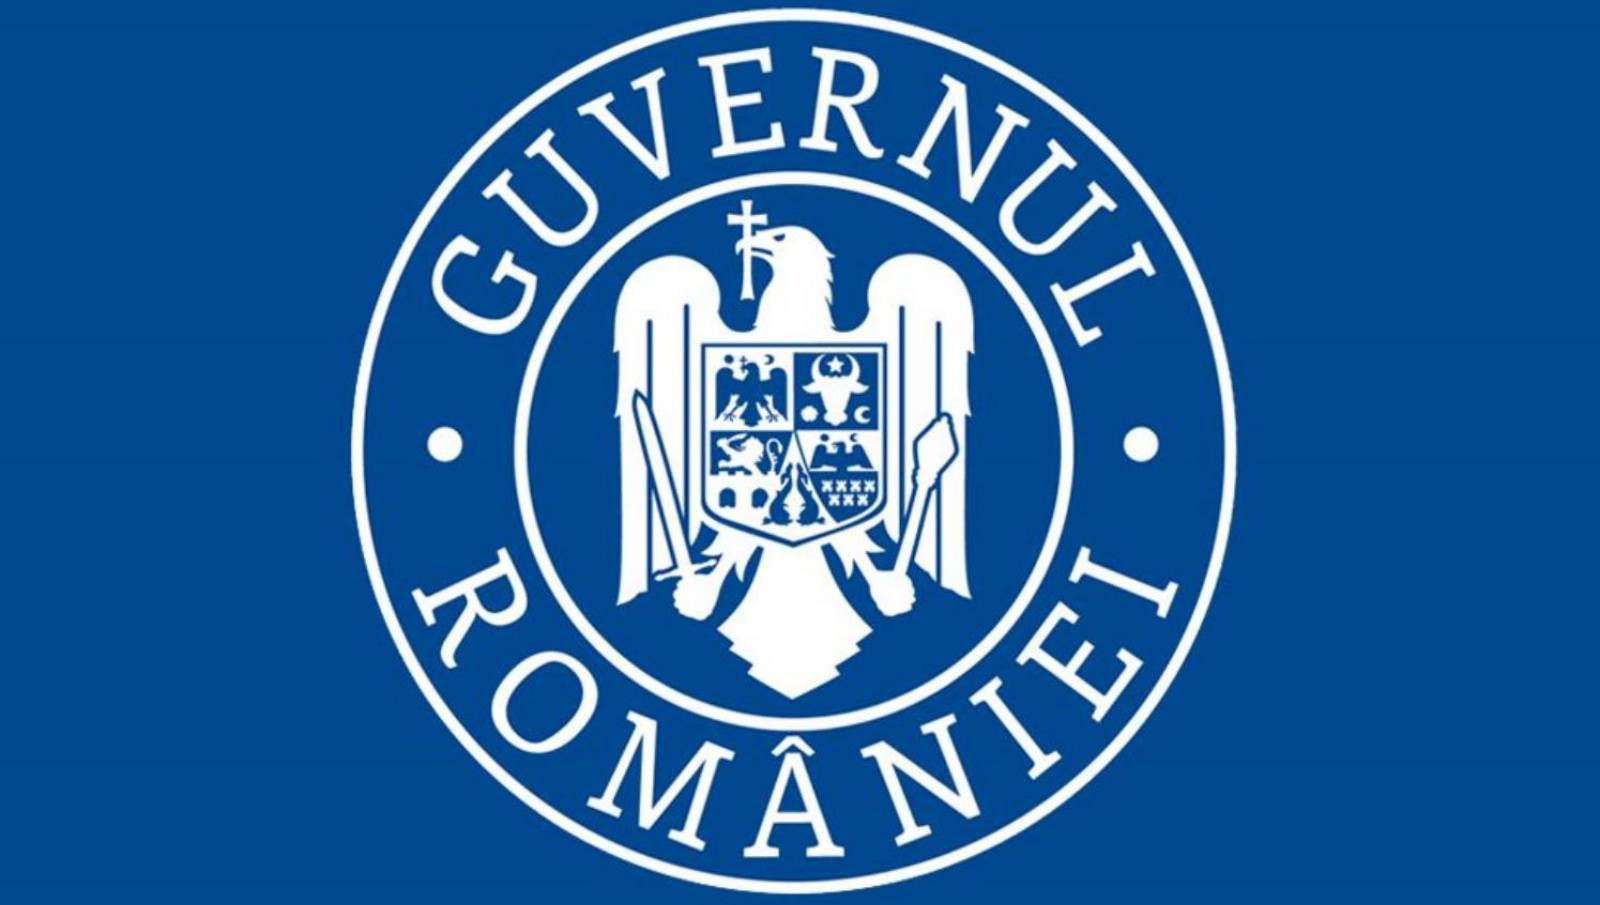 Hotararea Guvernului Romaniei prelungirea starii alerta